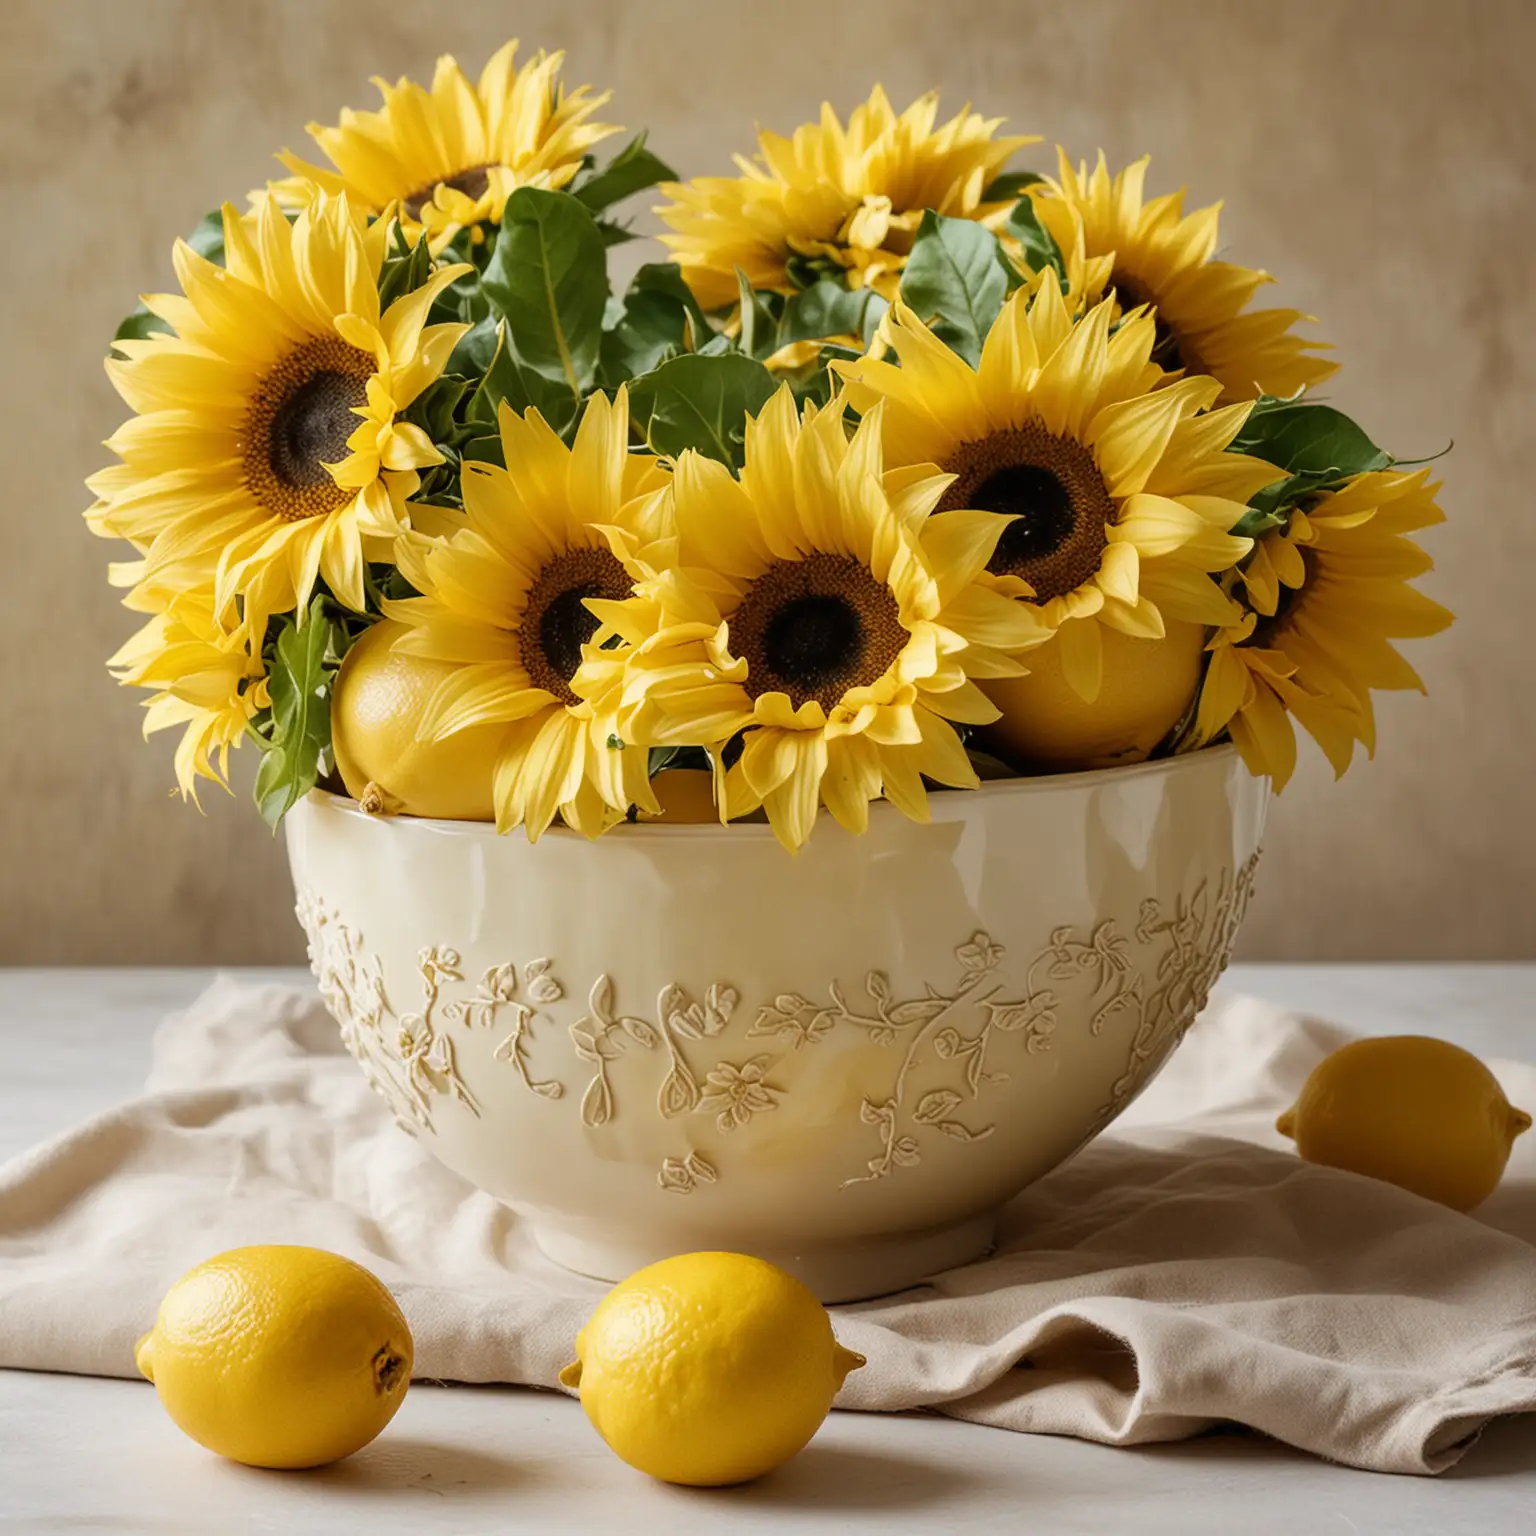 Sunflower-Blossoms-in-a-Bowl-of-Lemons